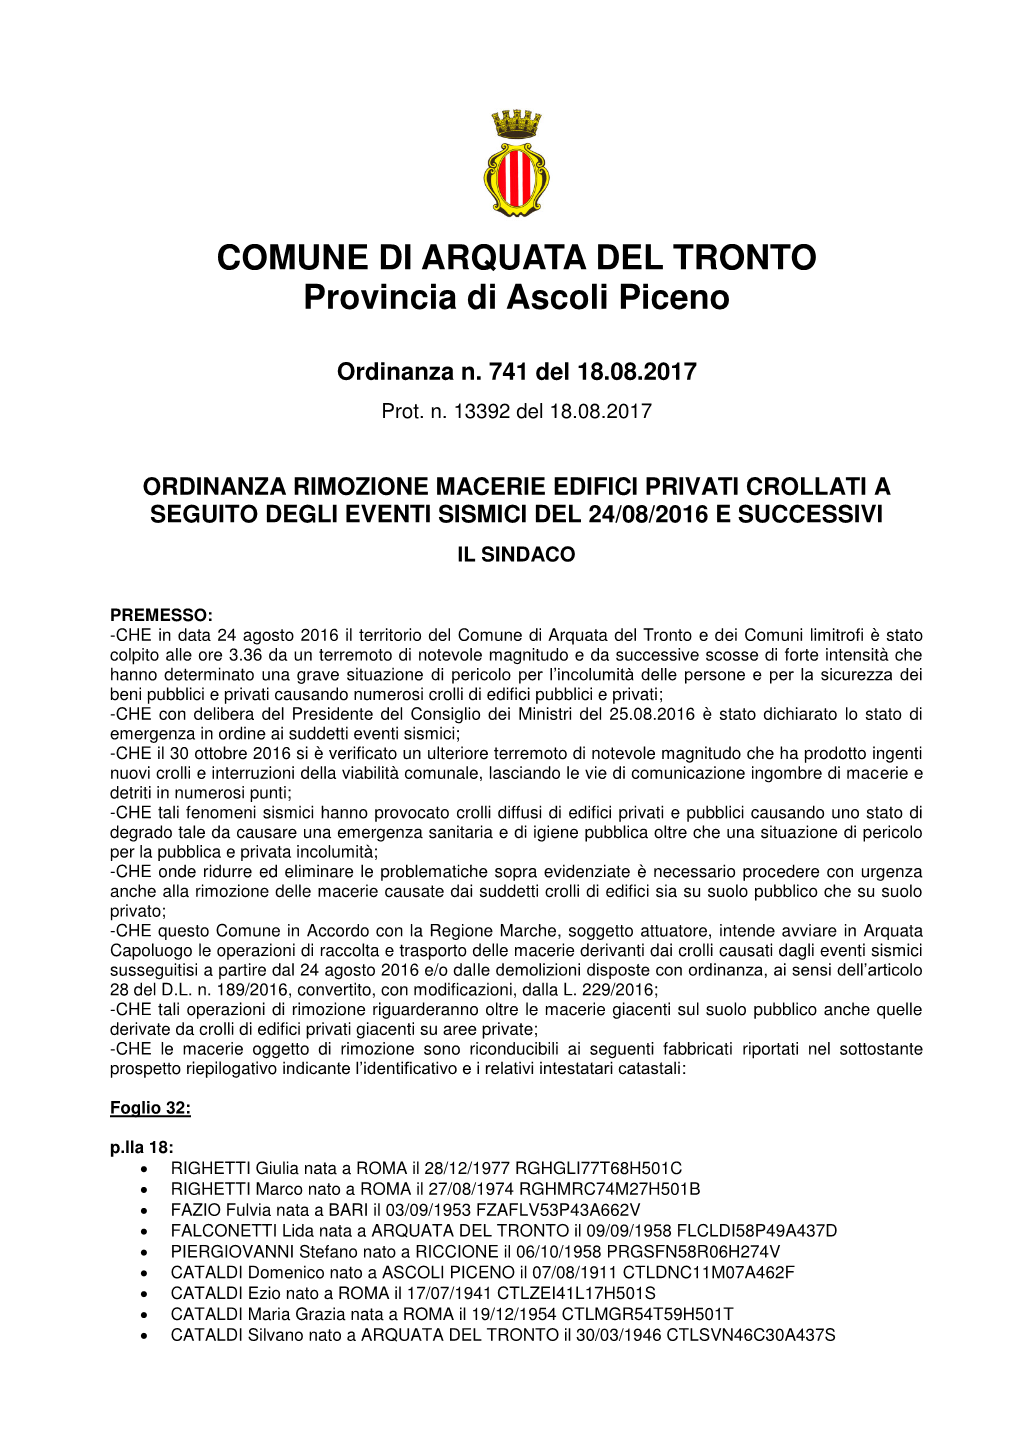 COMUNE DI ARQUATA DEL TRONTO Provincia Di Ascoli Piceno